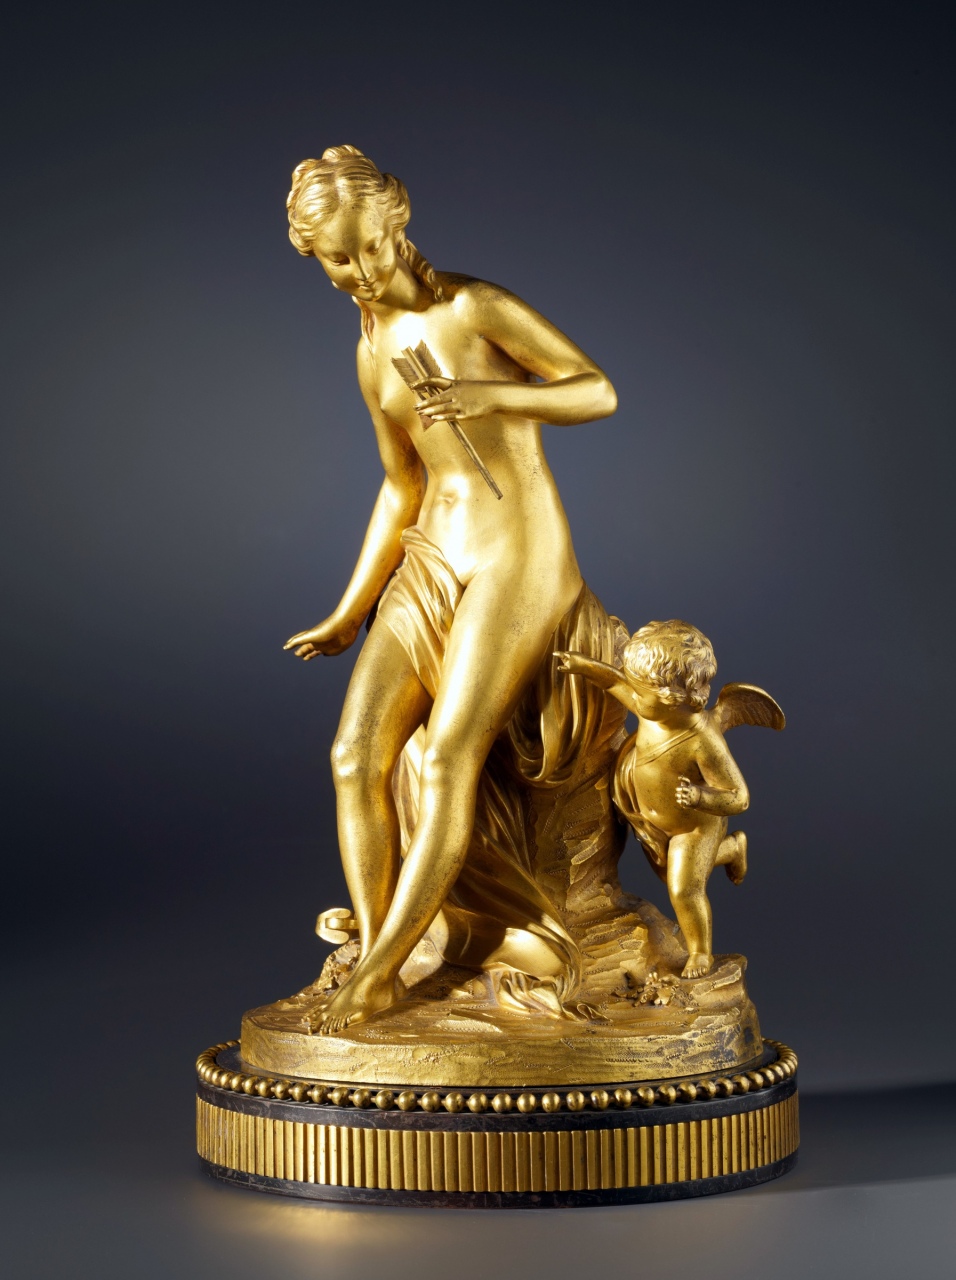 antique brass sculptures louis simon boizot after a louis xvi statuette after a model by of antique brass sculptures